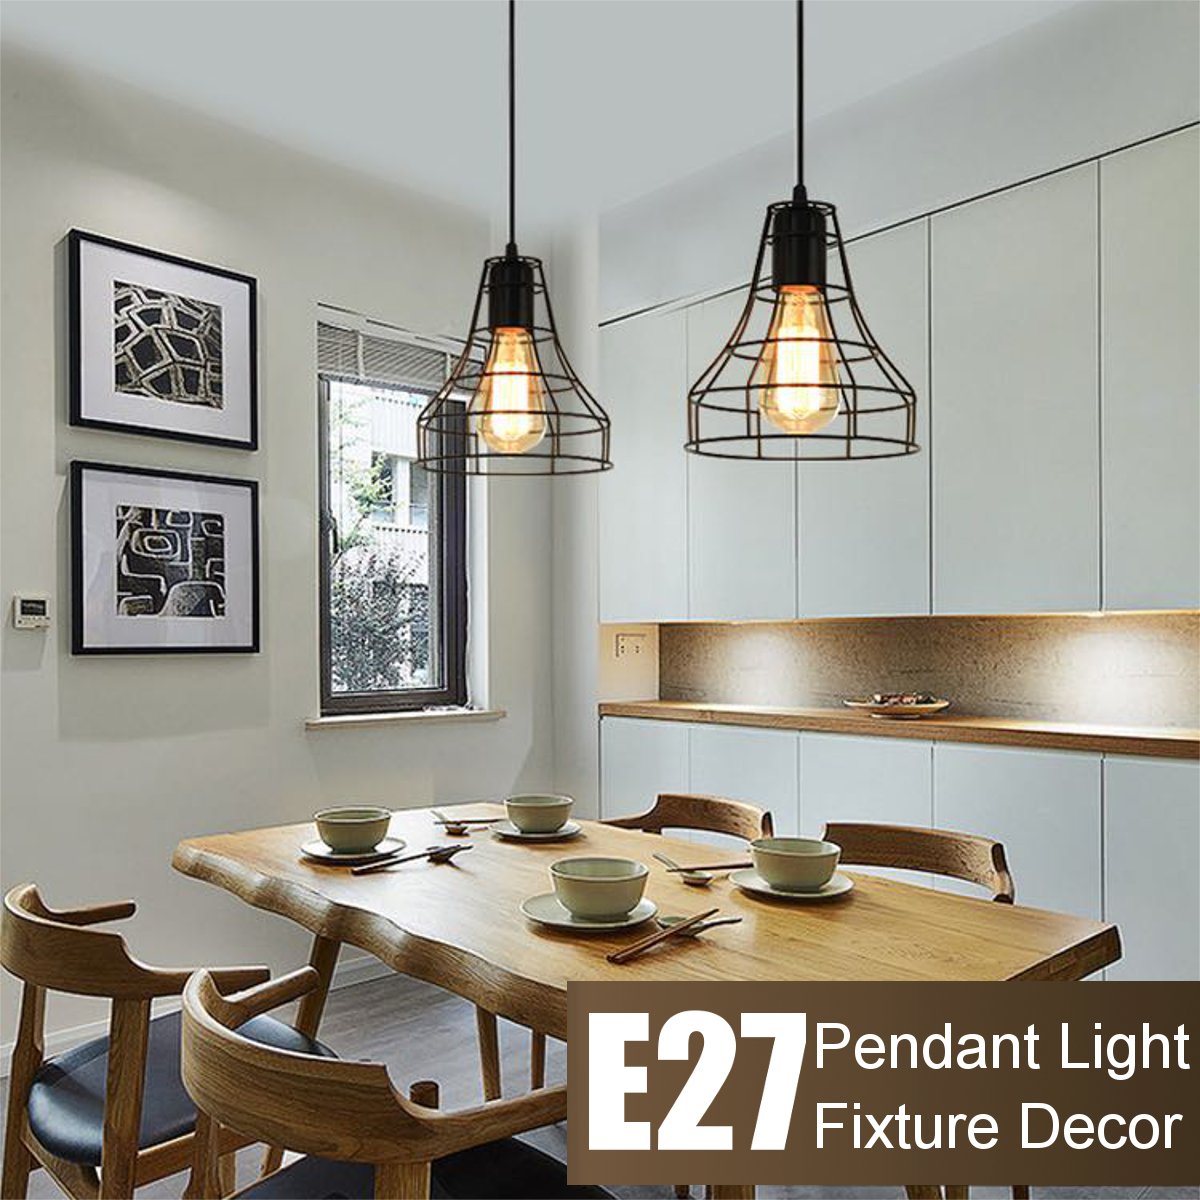 E27-Vintage-Retro-Pendant-Light-Ceiling-Lamp-Home-Dining-Fixture-Decoration-1697169-1